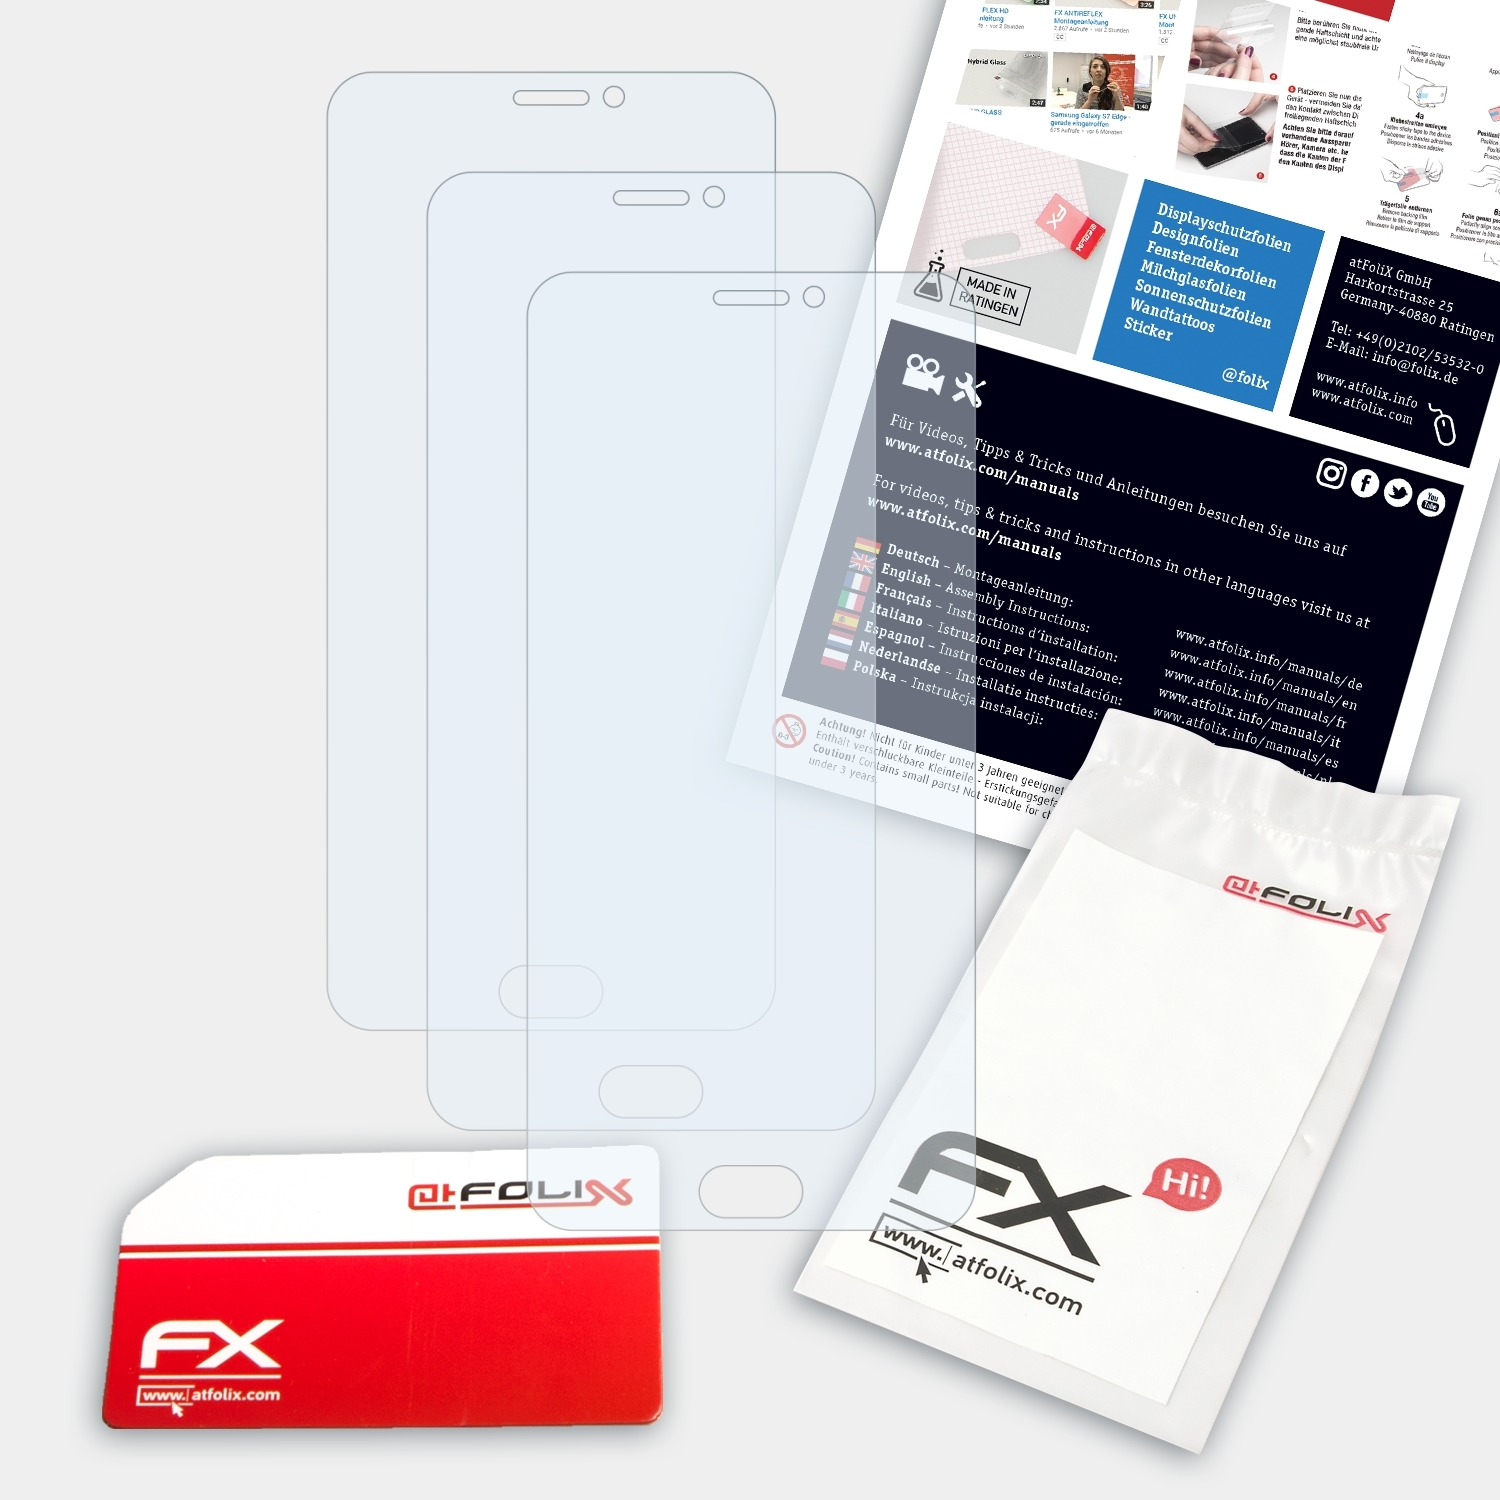 ATFOLIX 3x FX-Clear MX6) Displayschutz(für Meizu